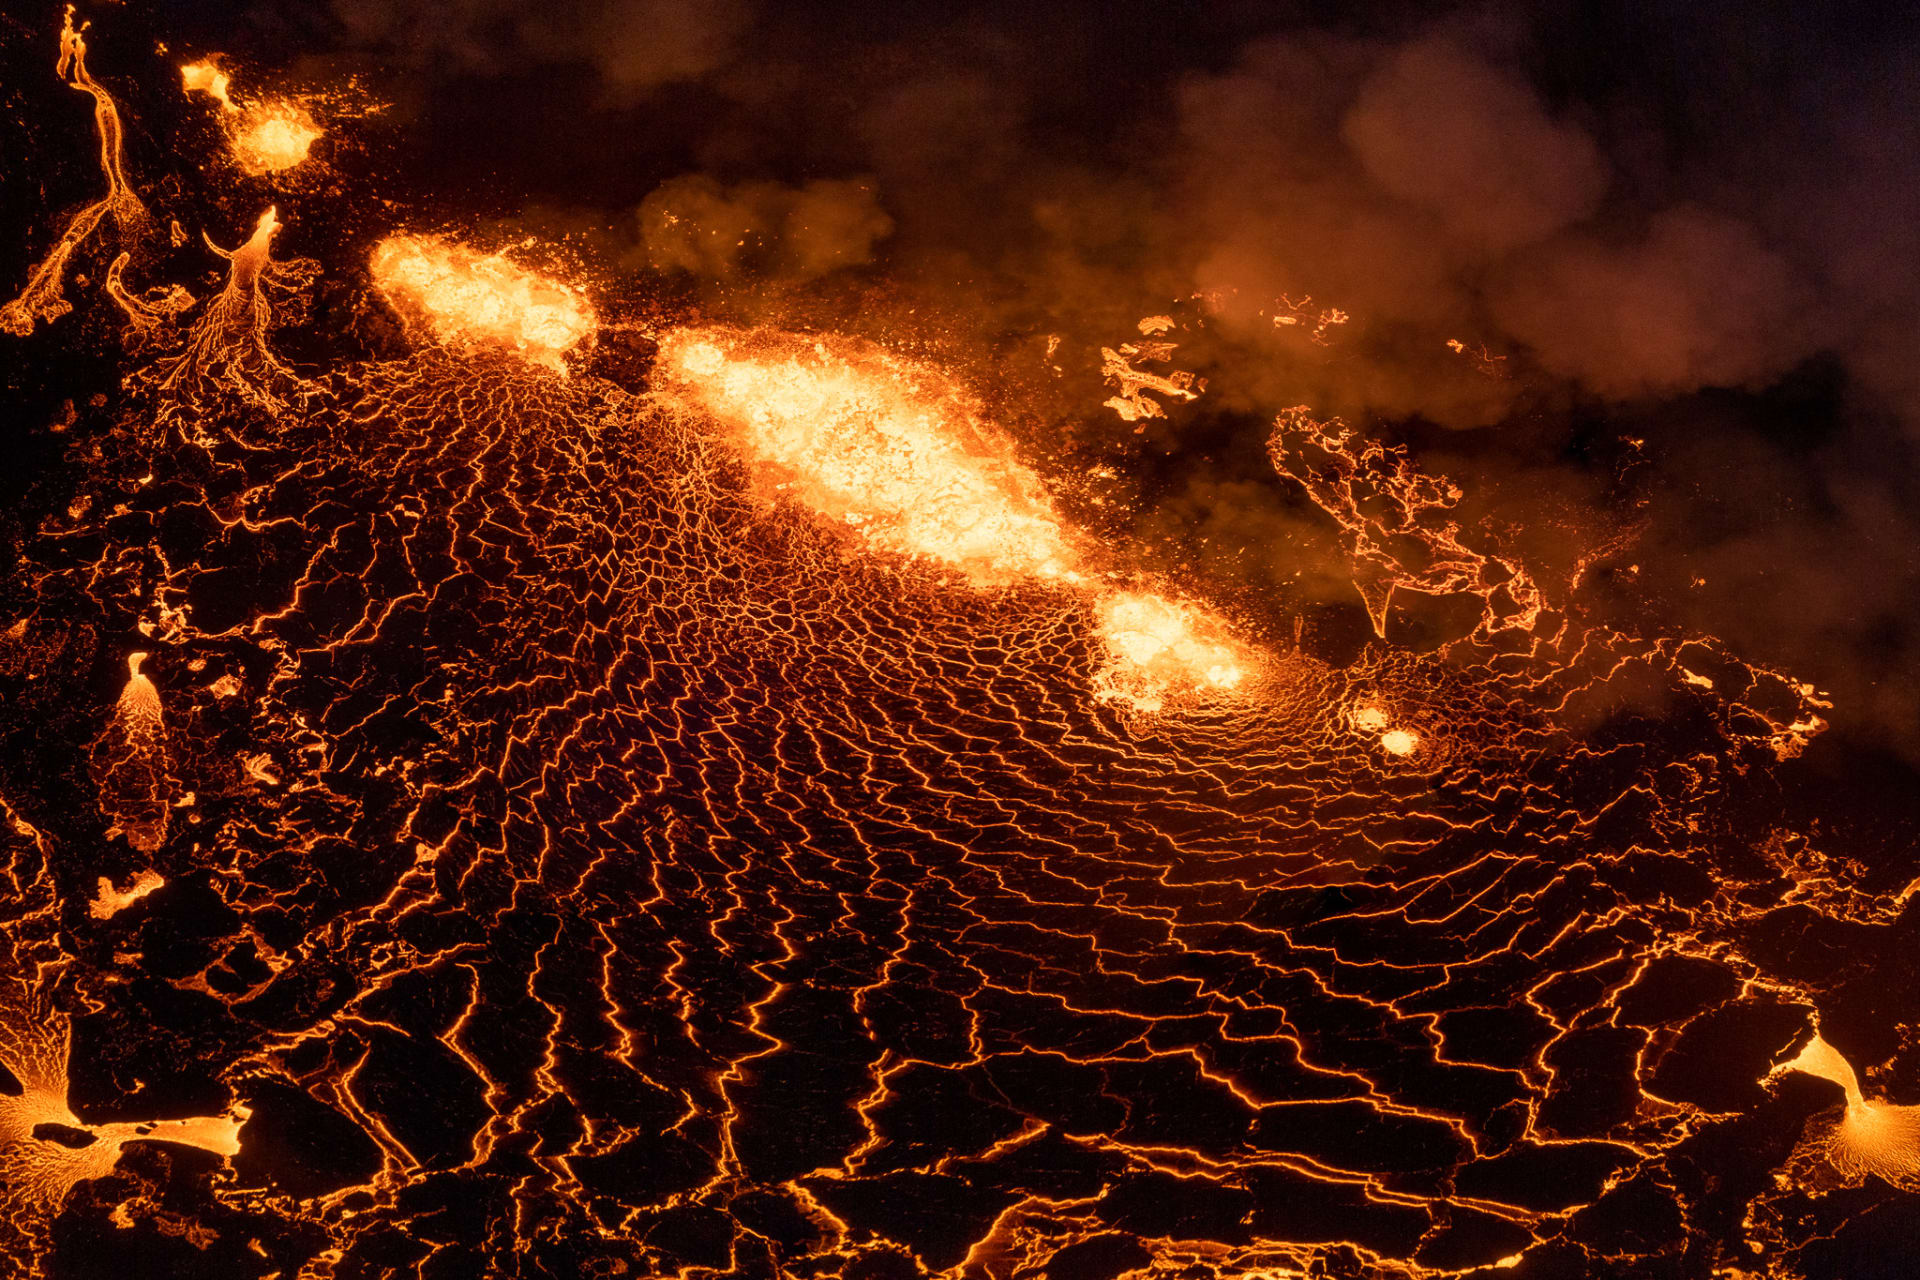 مشهد يحبس الأنفاس..مصور يرصد بحيرة حمم بركانية مشتعلة بأنماط مذهلة في آيسلندا